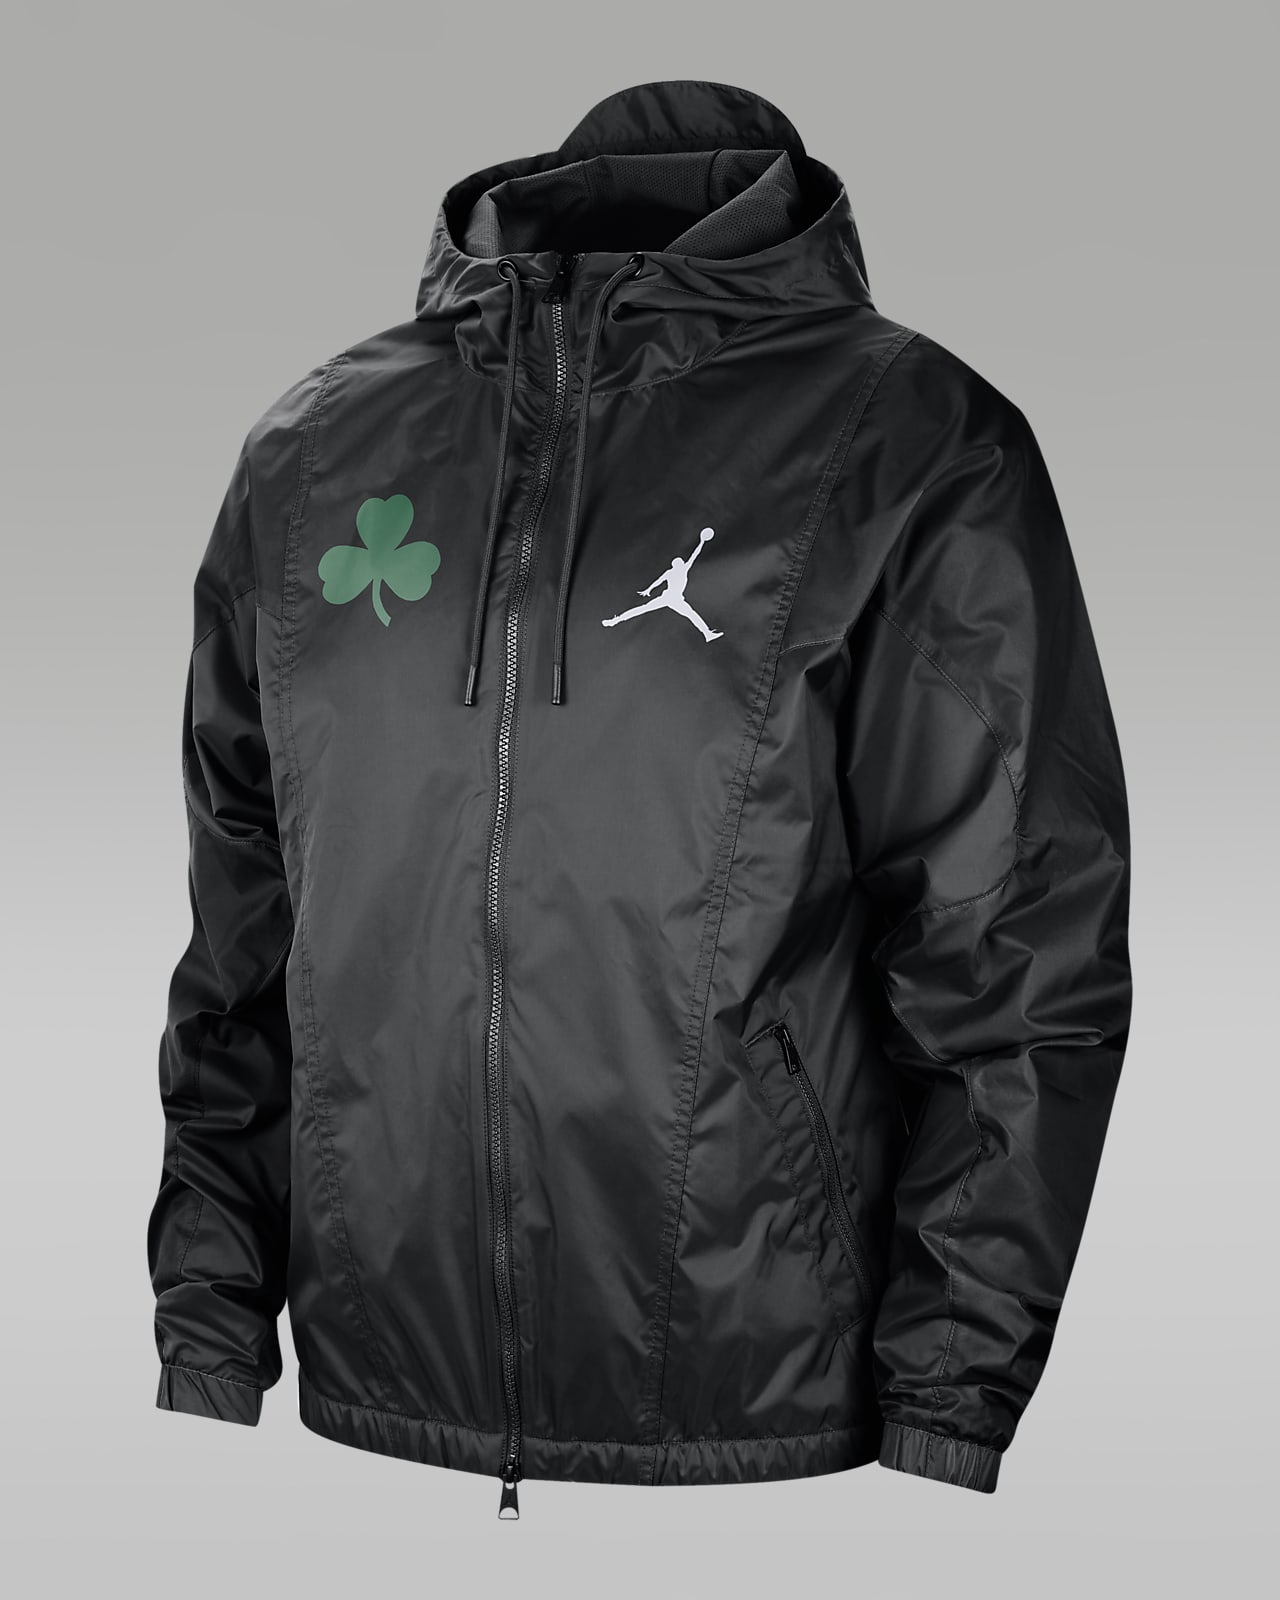 Boston Celtics Courtside Statement Men's Jordan NBA Jacket. Nike.com